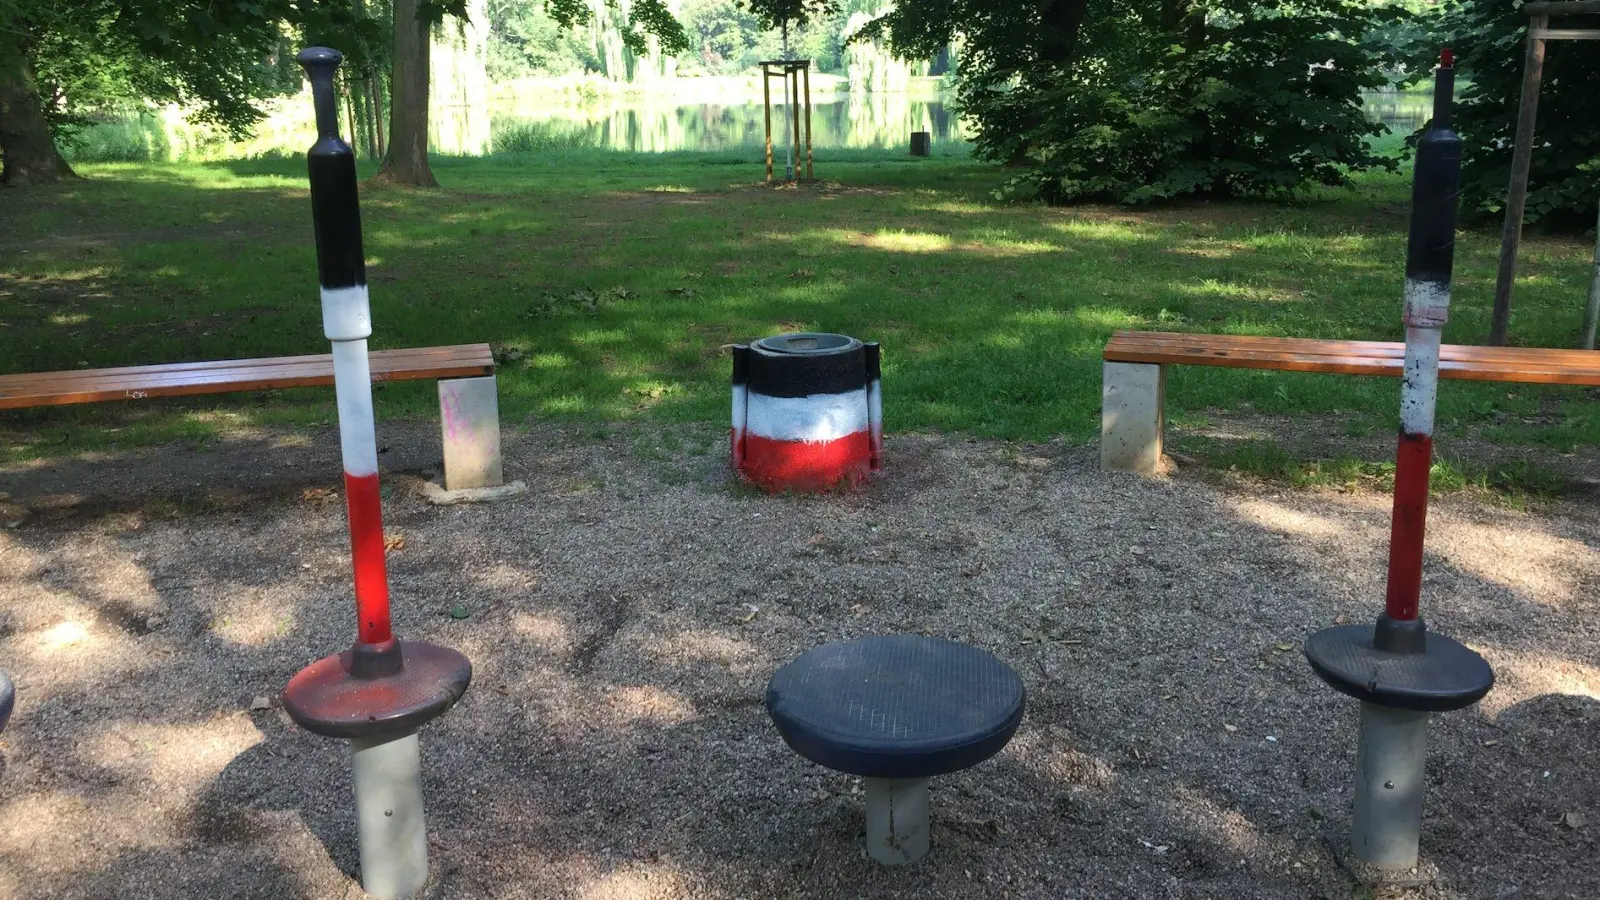 Öffentliche Anlagen im Park mit Farben der Reichsflagge beschmiert (Foto: taucha-kompakt.de)